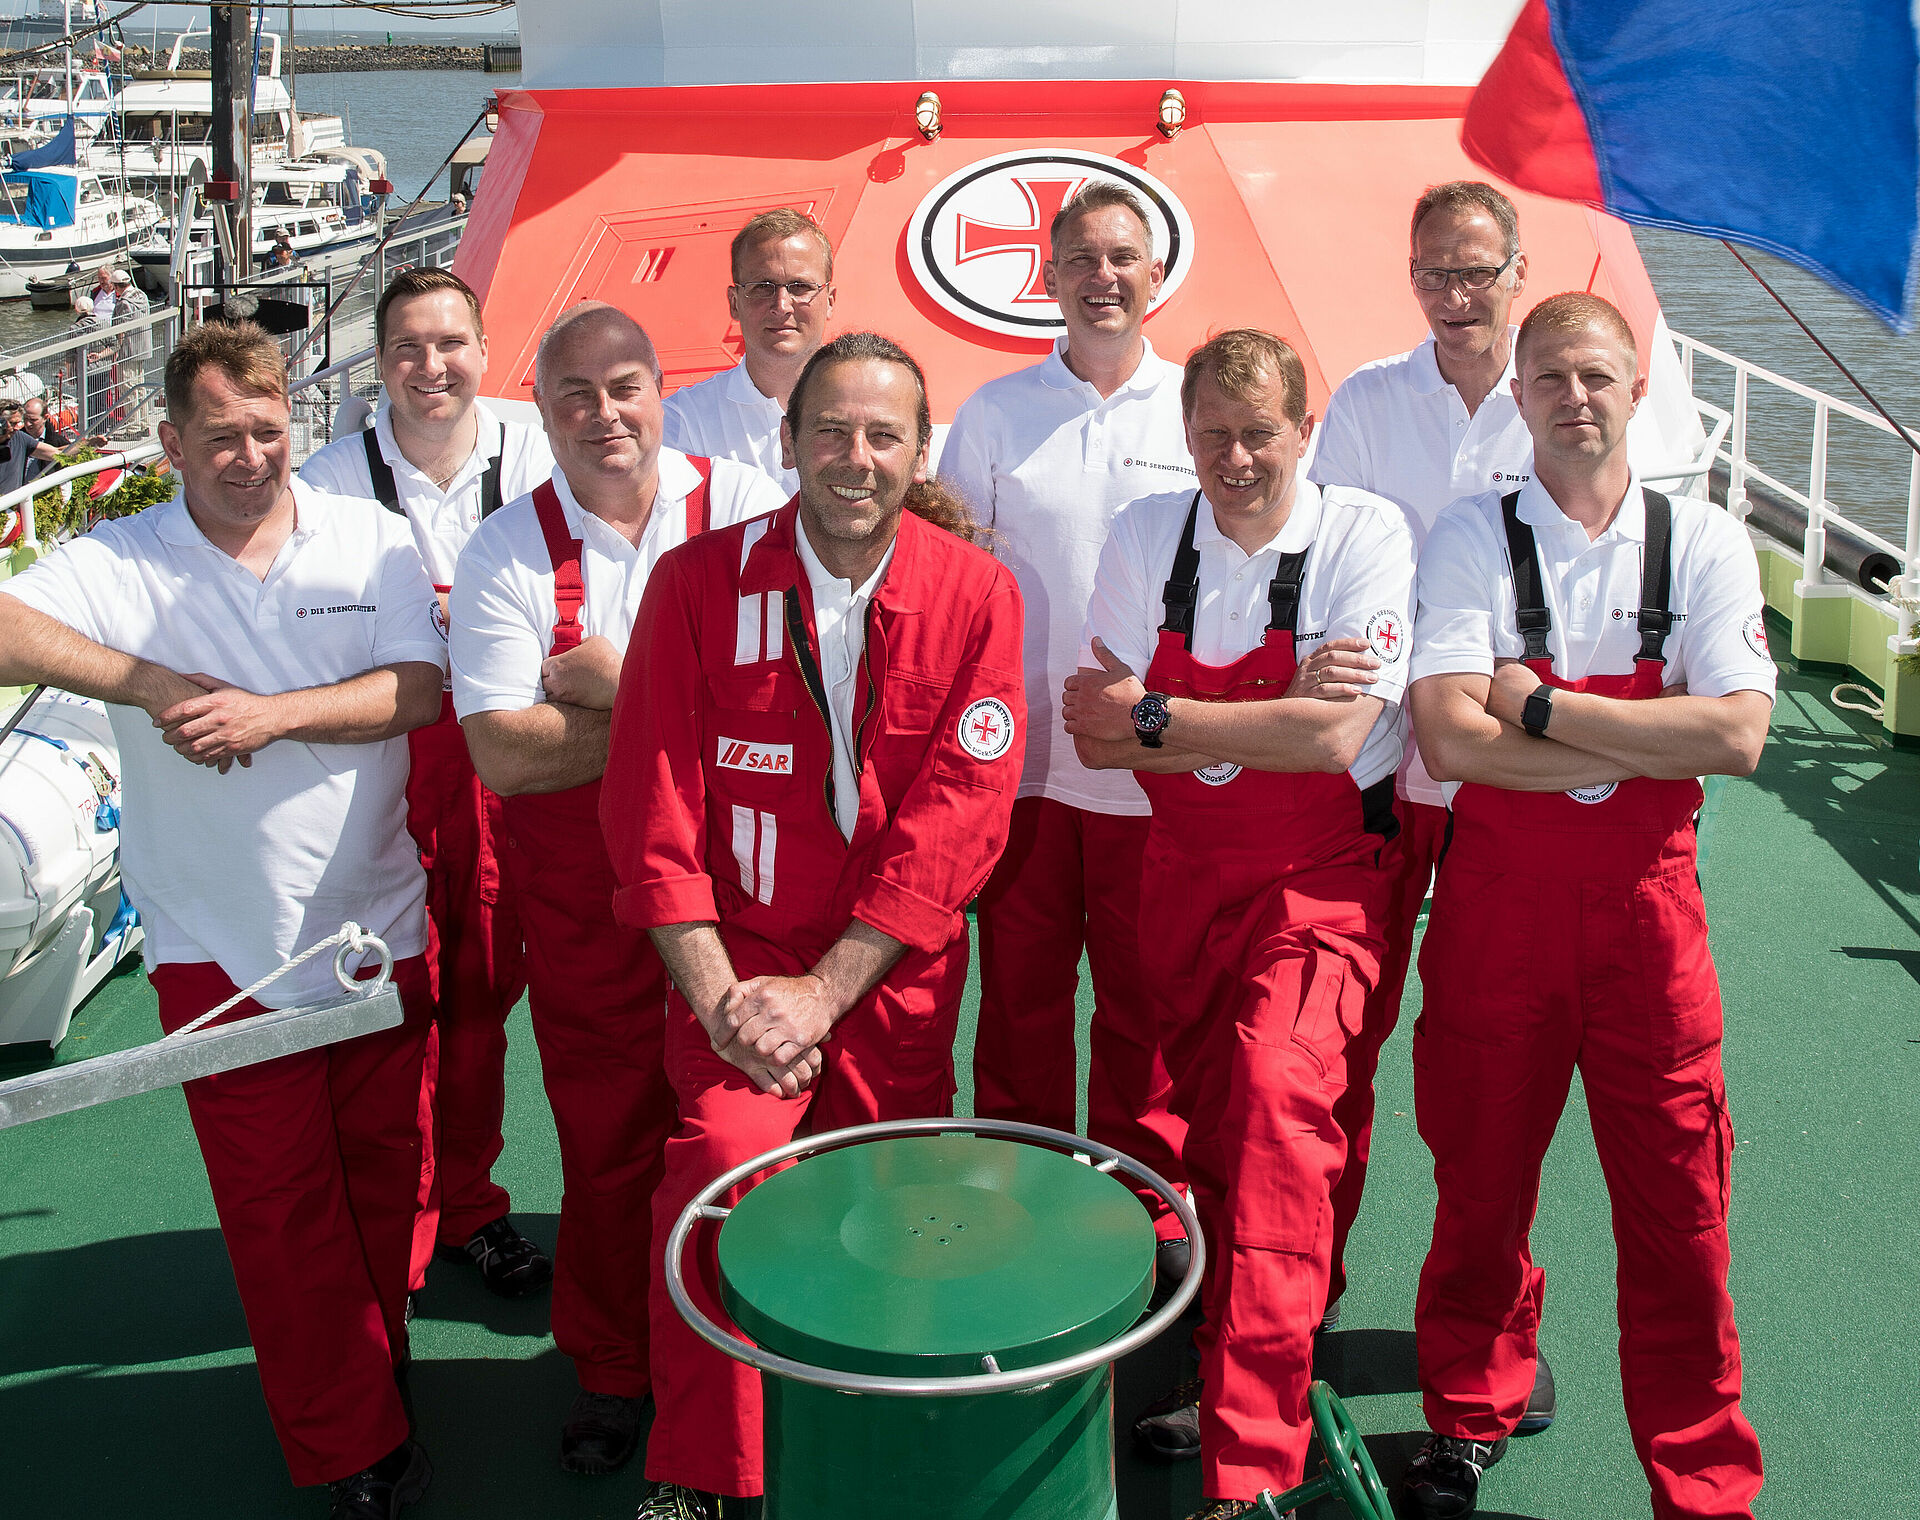 Gruppenbild der Seenotretter aus Cuxhaven auf dem Vorschiff ihres Seenotrettungskreuzers. Sie tragen rote Einsatzkleidung und lächeln freundlich in die Kamera.